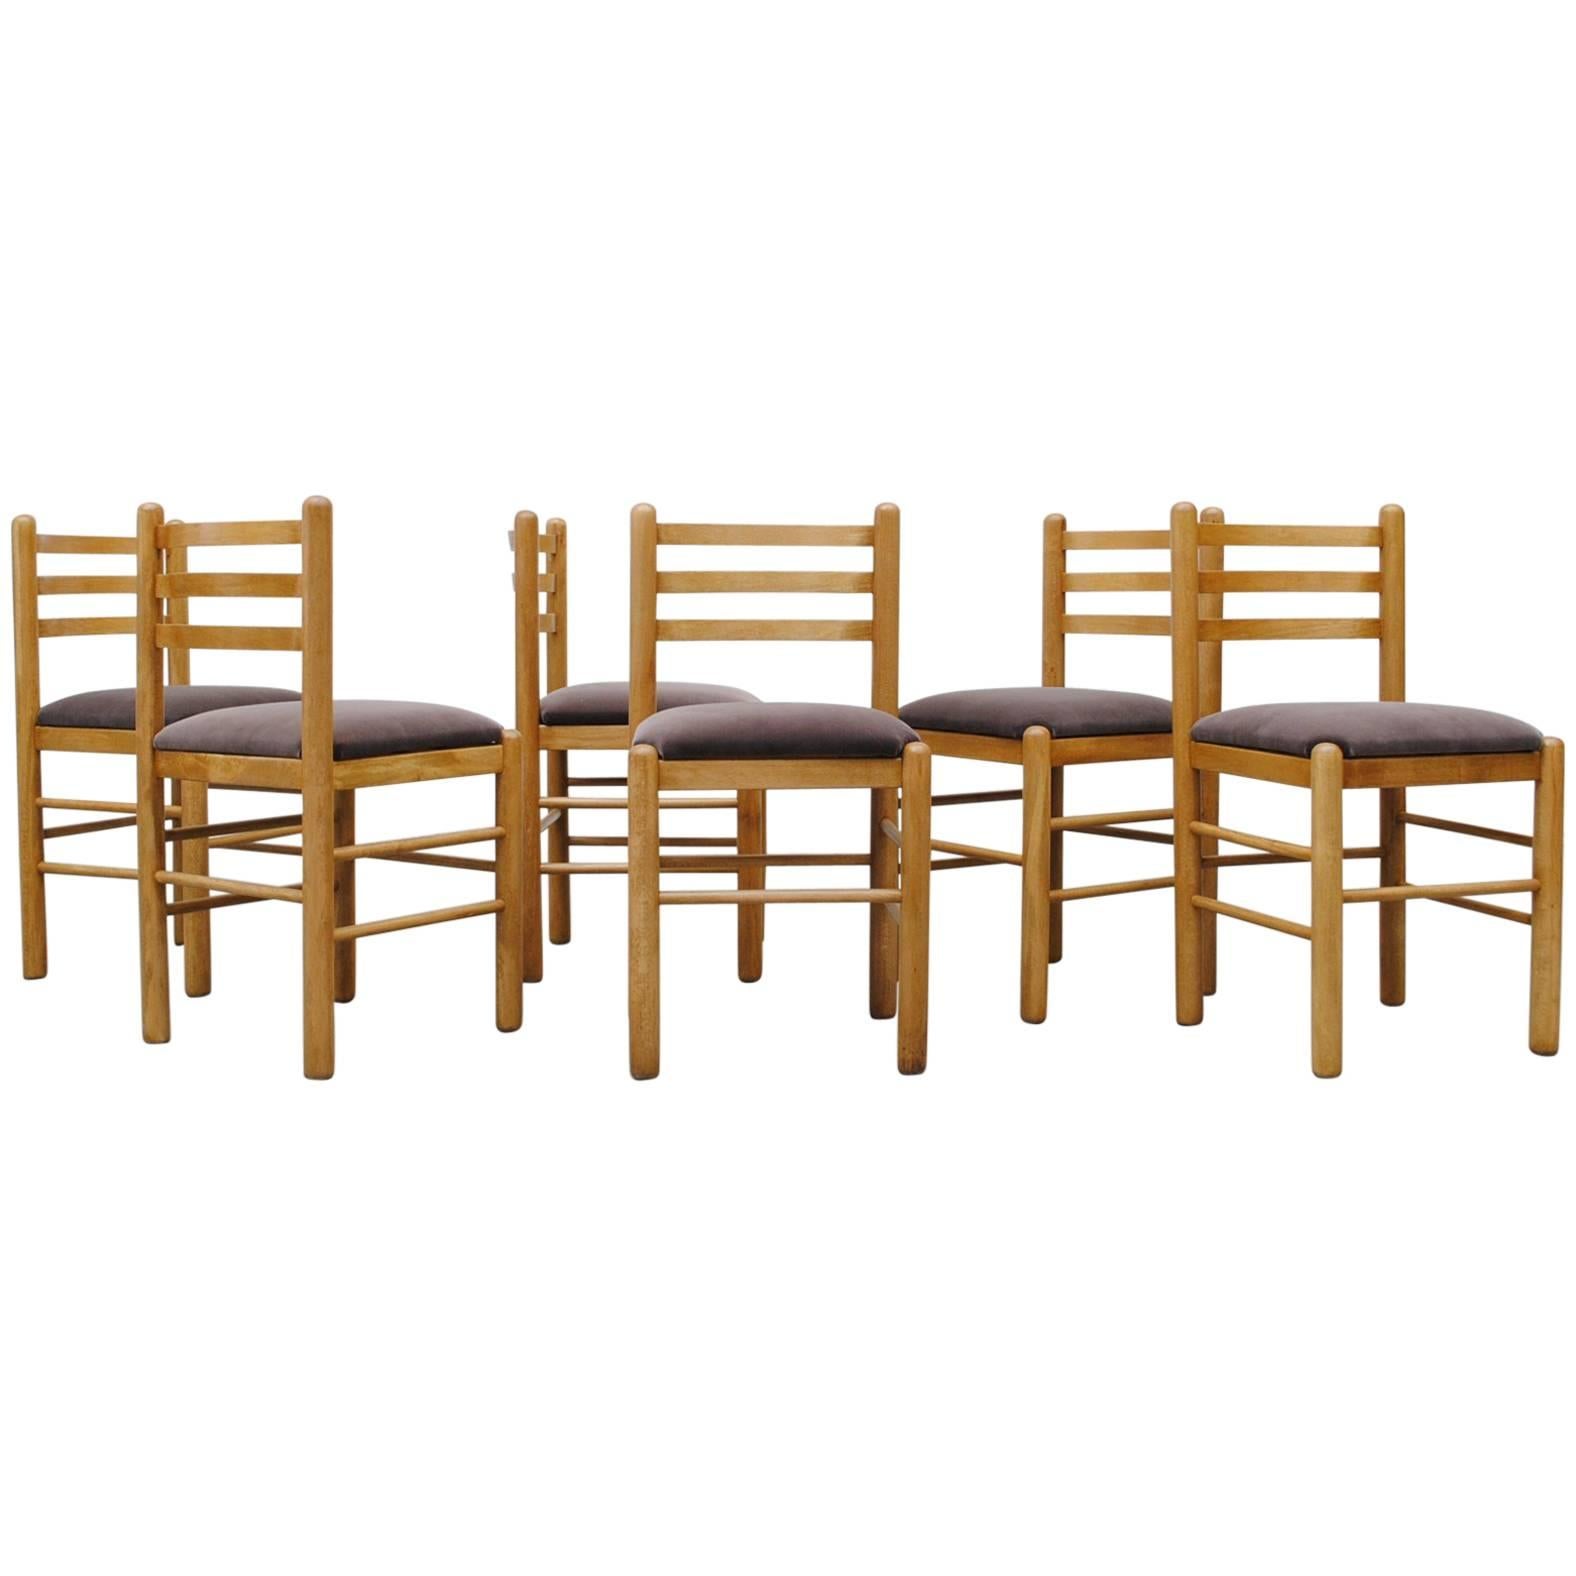 Ate van Apeldoorn Style Ladder Back Dining Chairs in Grey Velvet